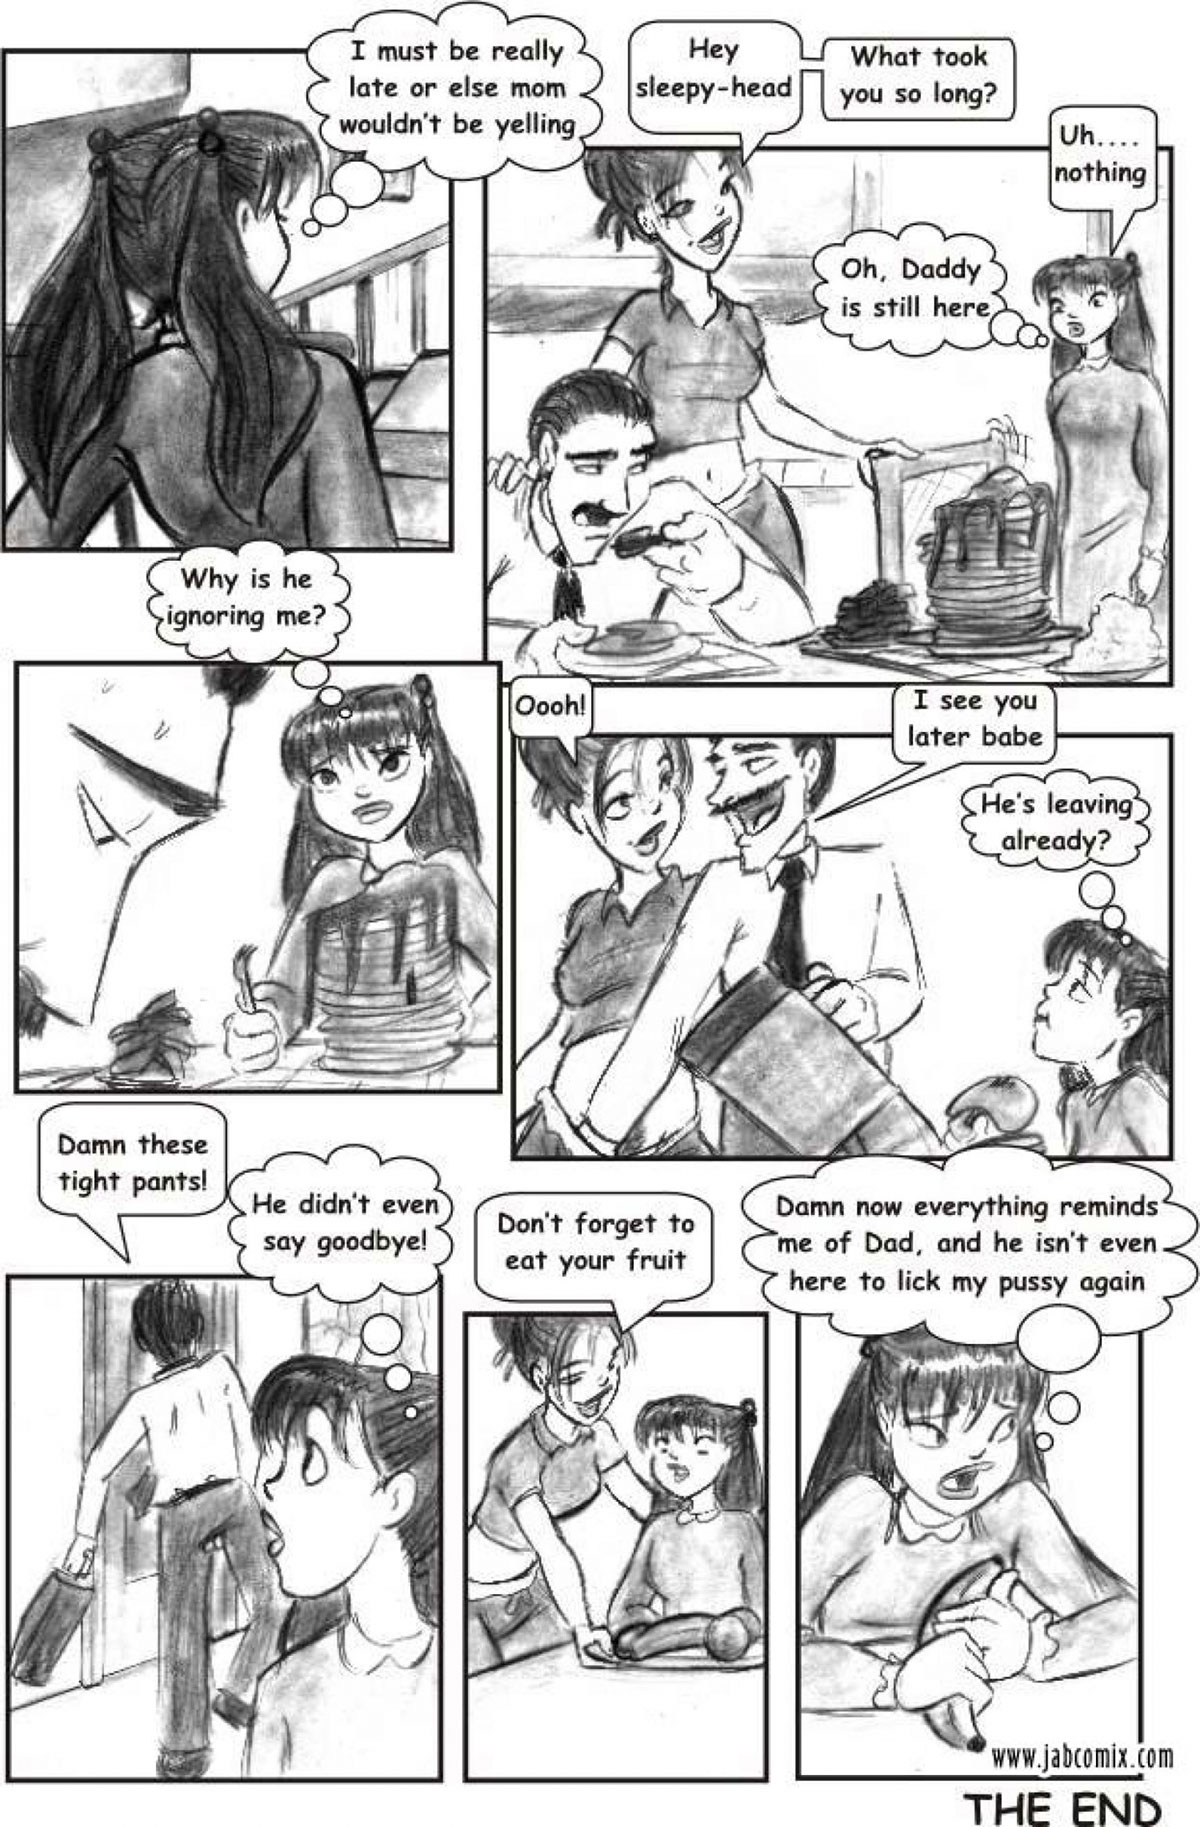 Jab porn comic - Ay Papi - page 21